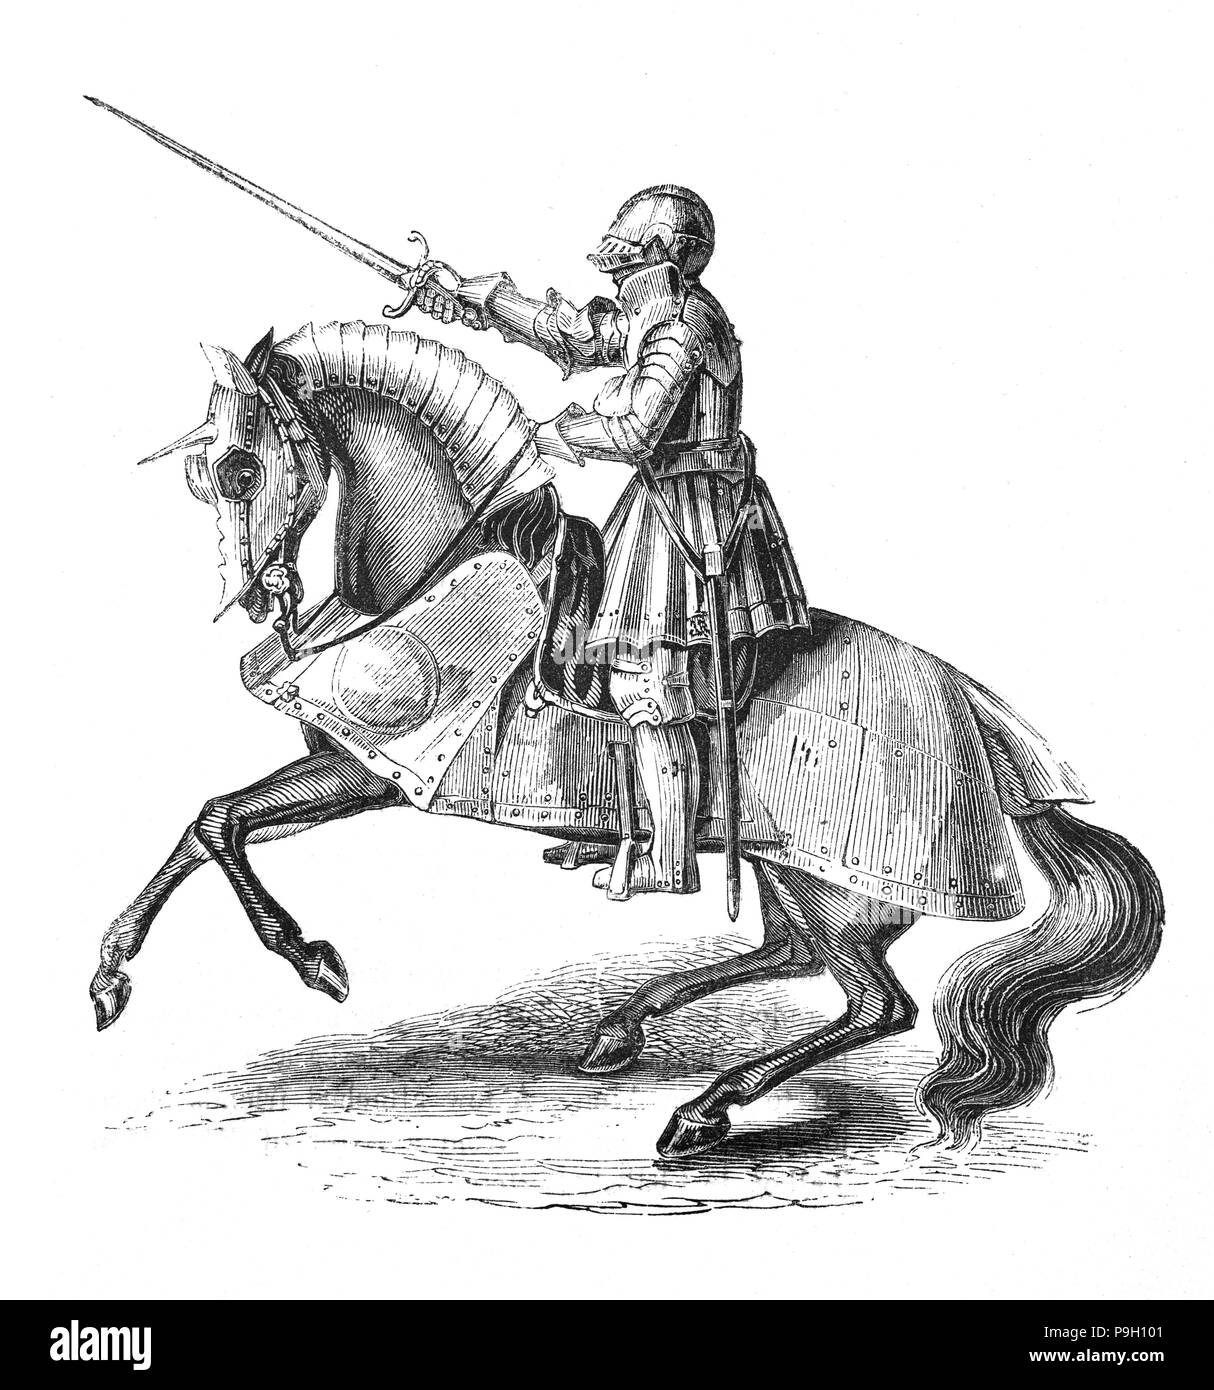 Henry VIII (1491 - 1547) a caballo y vestido de armadura de cuerpo completo. Él era el rey de Inglaterra desde 1509 hasta su muerte, y el segundo monarca Tudor, sucediendo a su padre, Enrique VII. Sus primeras campañas militares comenzó cuando se unió al Papa Julio II la Santa Liga contra Francia en 1511. Wolsey demostró ser un excelente ministro en su organización de la primera campaña de Francia y mientras los escoceses guerra vieron esto como una oportunidad de invadir Inglaterra, fueron derrotados en Flodden en 1513. Sin embargo la guerra con Francia, a la larga, resultó costoso y fallido Foto de stock